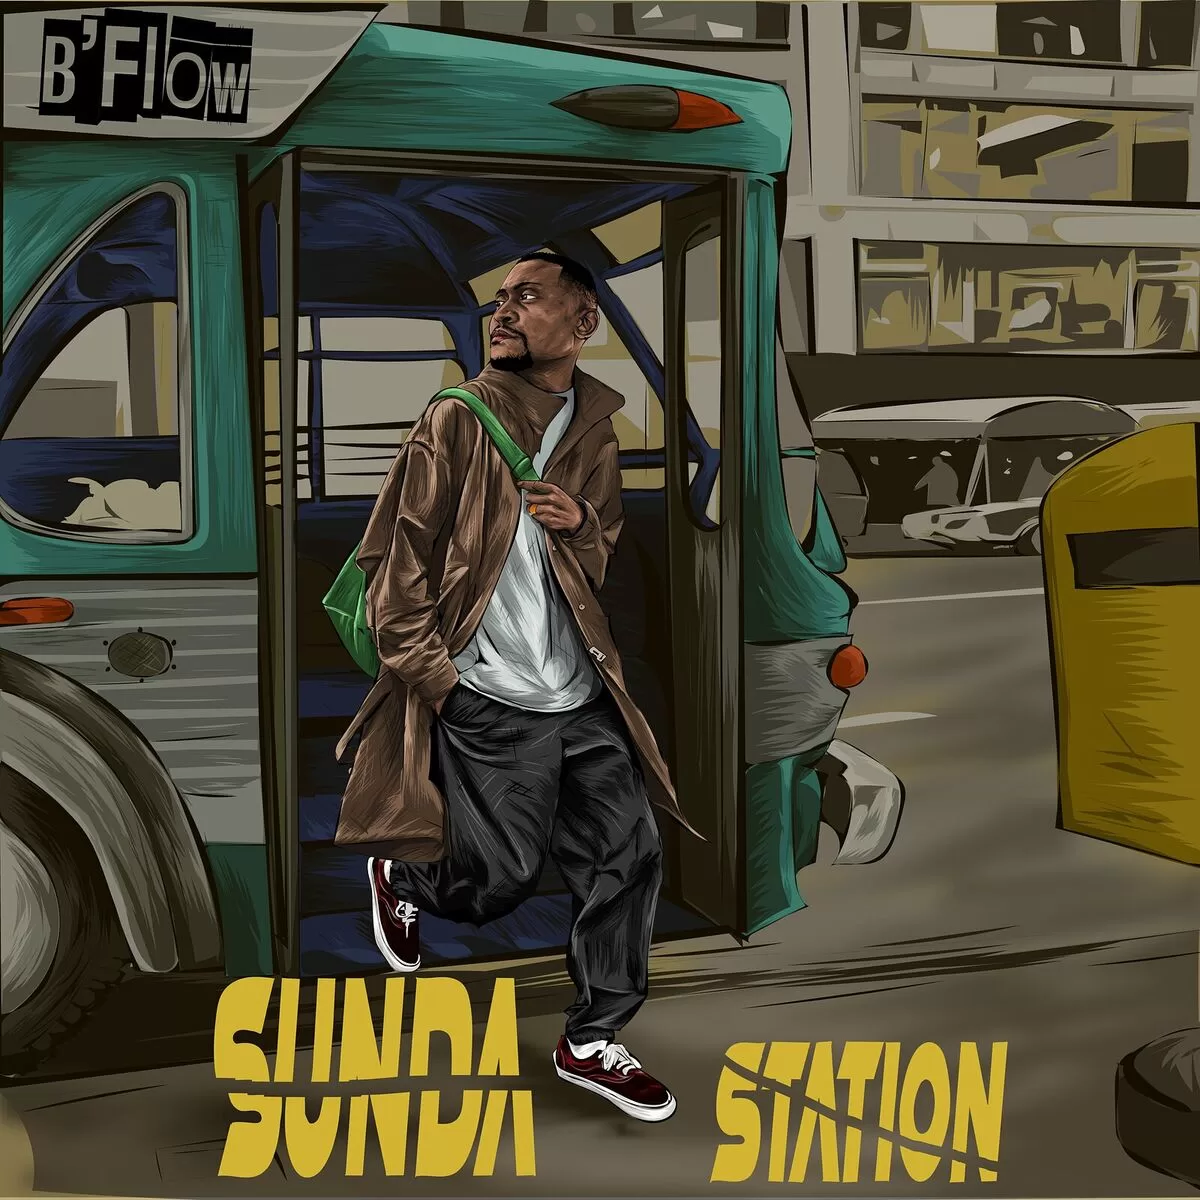 B'Flow - Sunda Station (Full ALBUM)